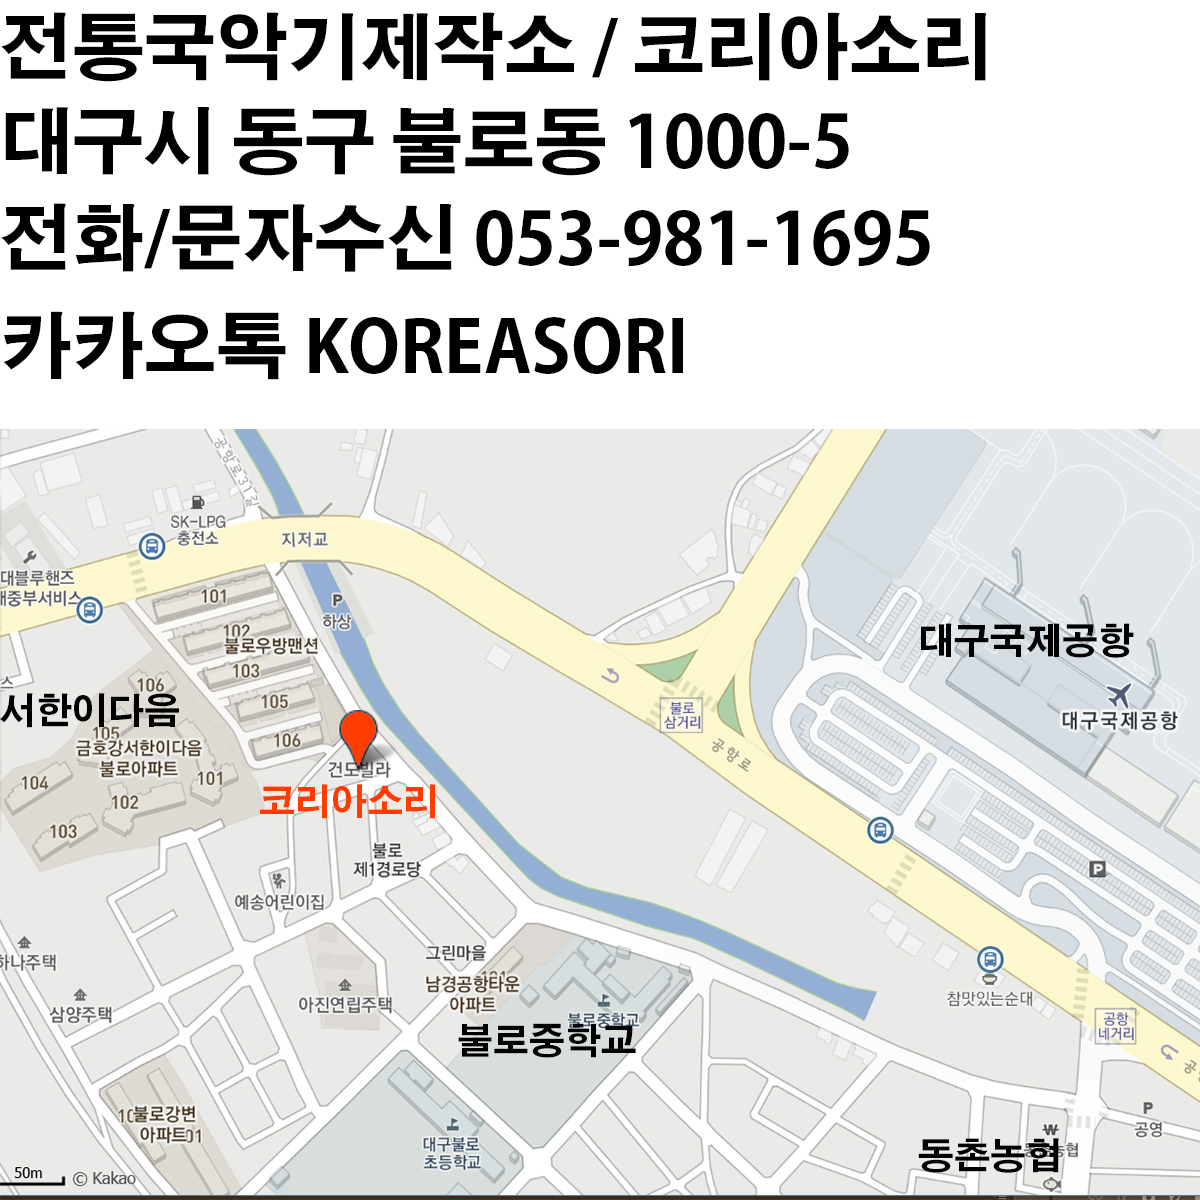 화이트 벨벳섬유 라운드직사각 카본 해금케이스 / CSN-DER121B